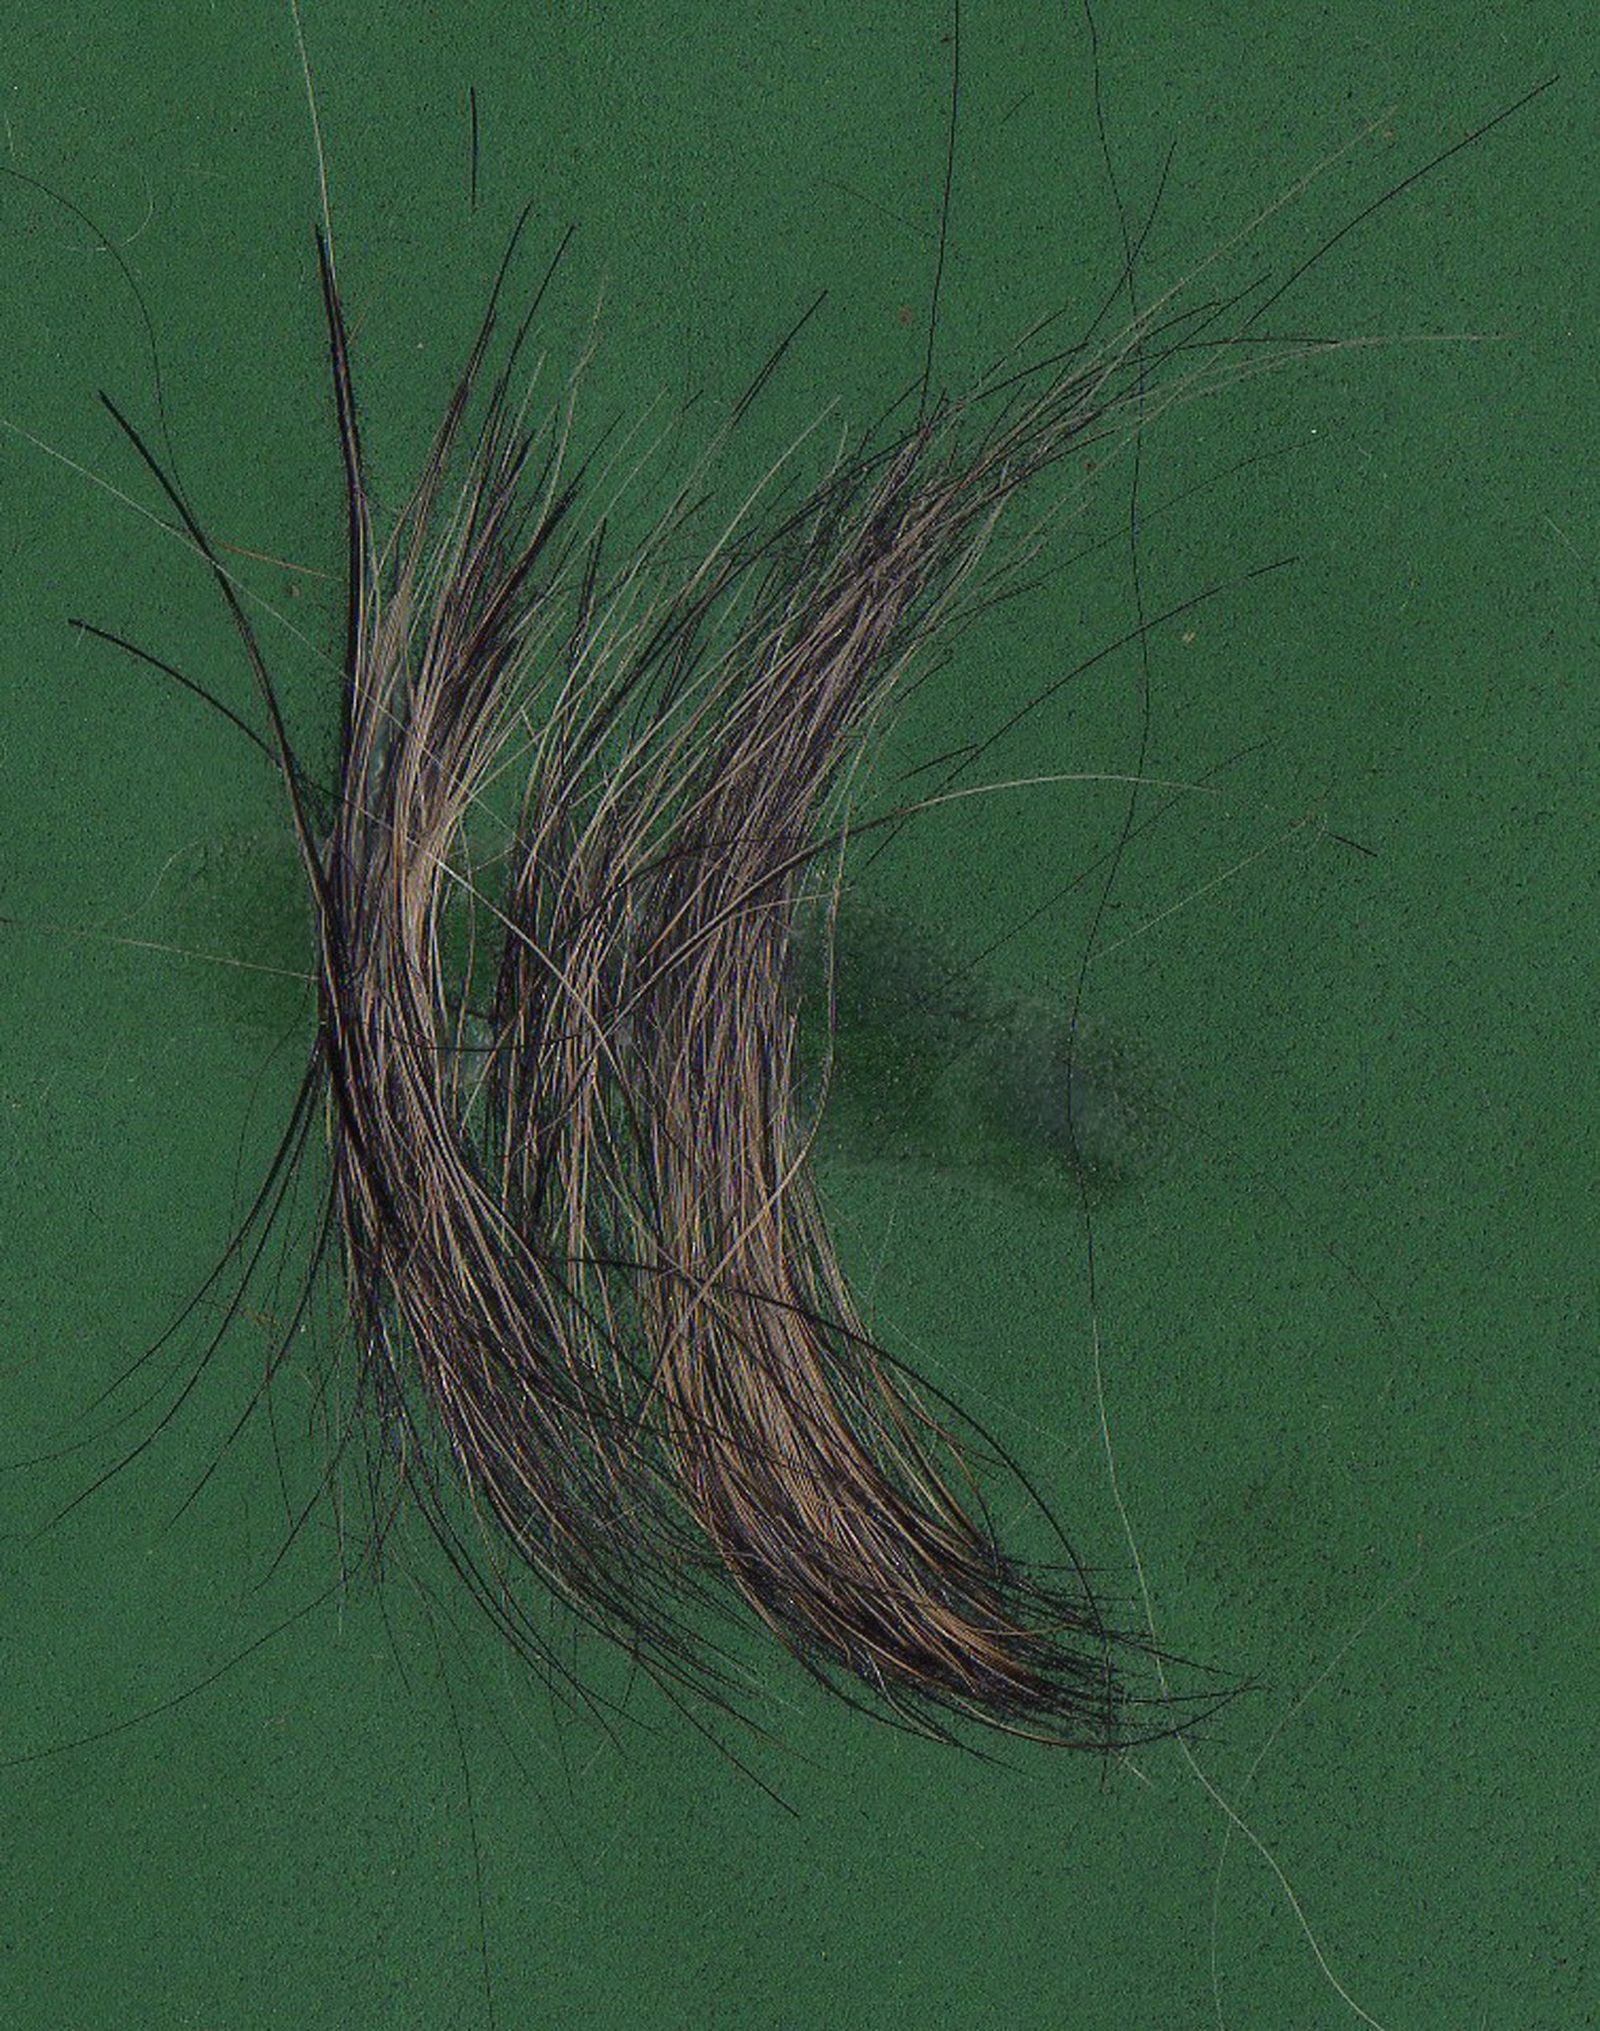 Haare vom Rauhaardackel auf grünem Untergrund mit kurzer und fester Haarstruktur